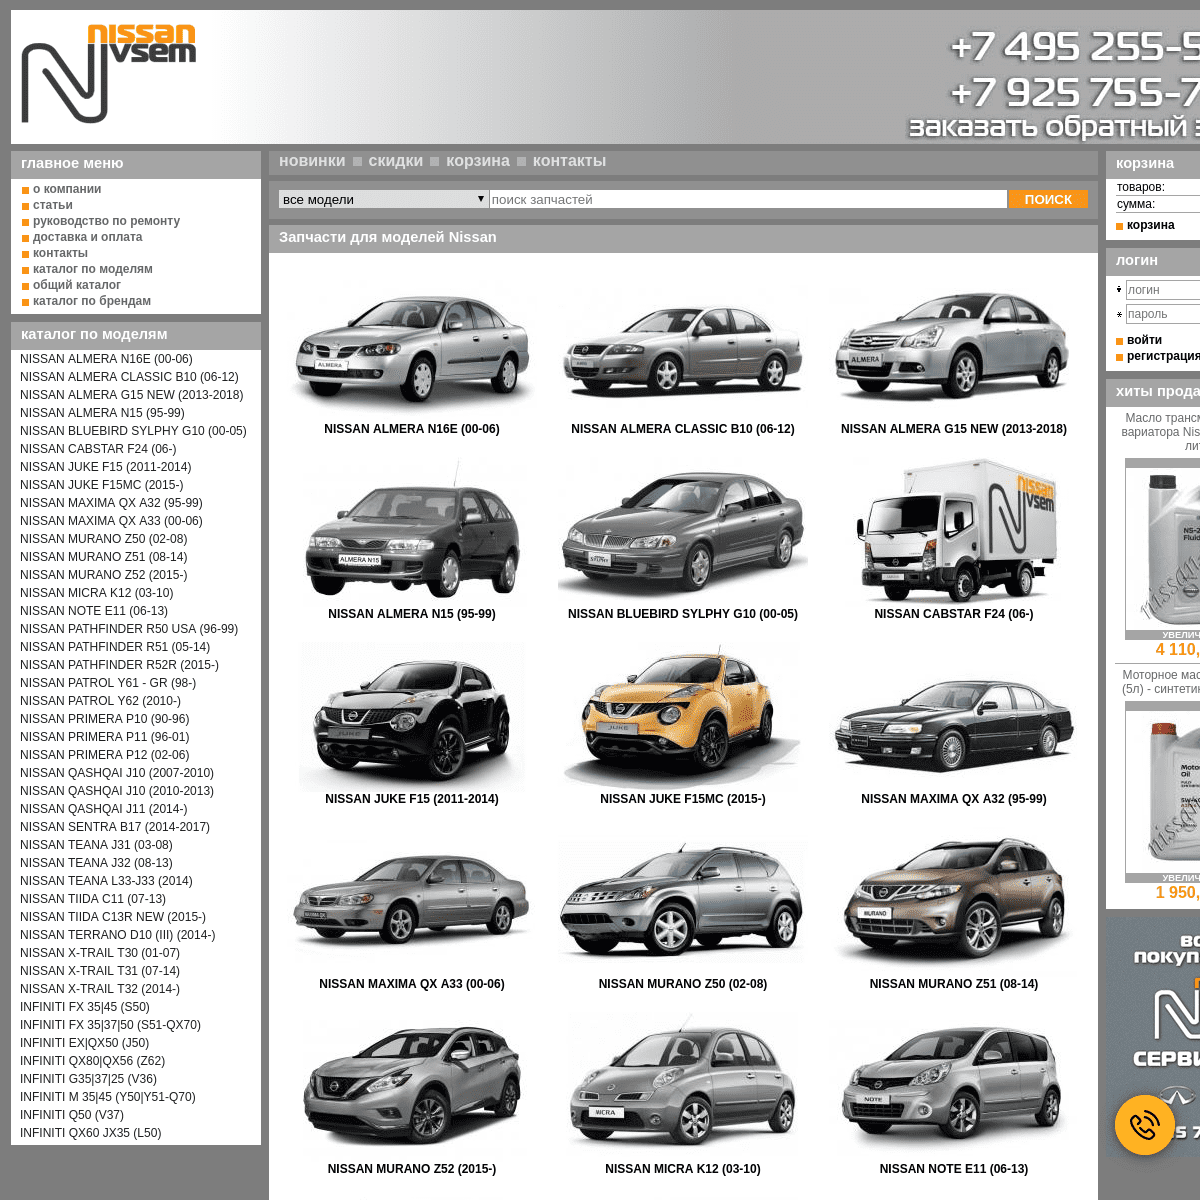 Запчасти Nissan & Infiniti купить в интернет магазине автозапчастей Nissan-vsem.ru Разборка.